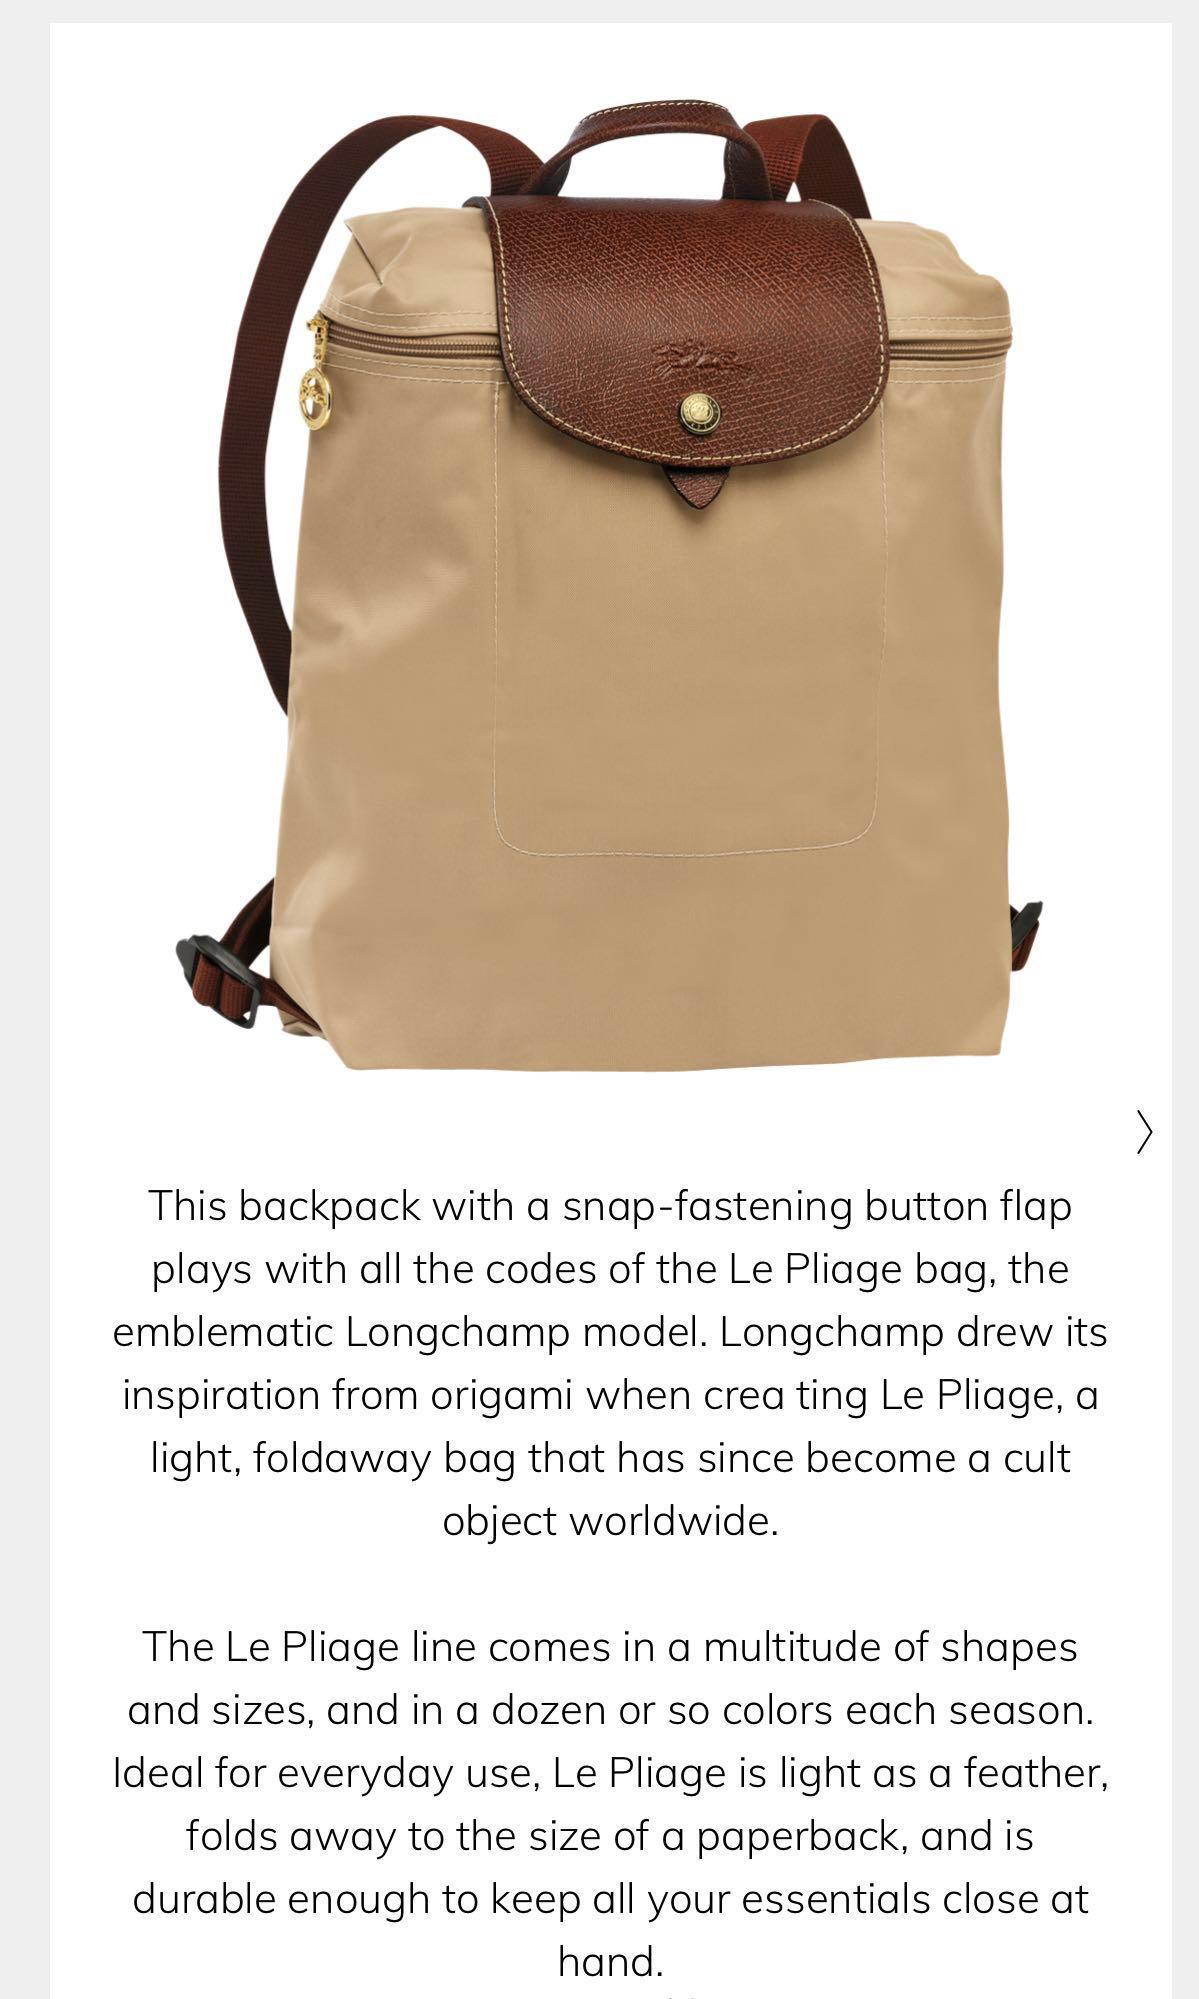 longchamp yellow backpack